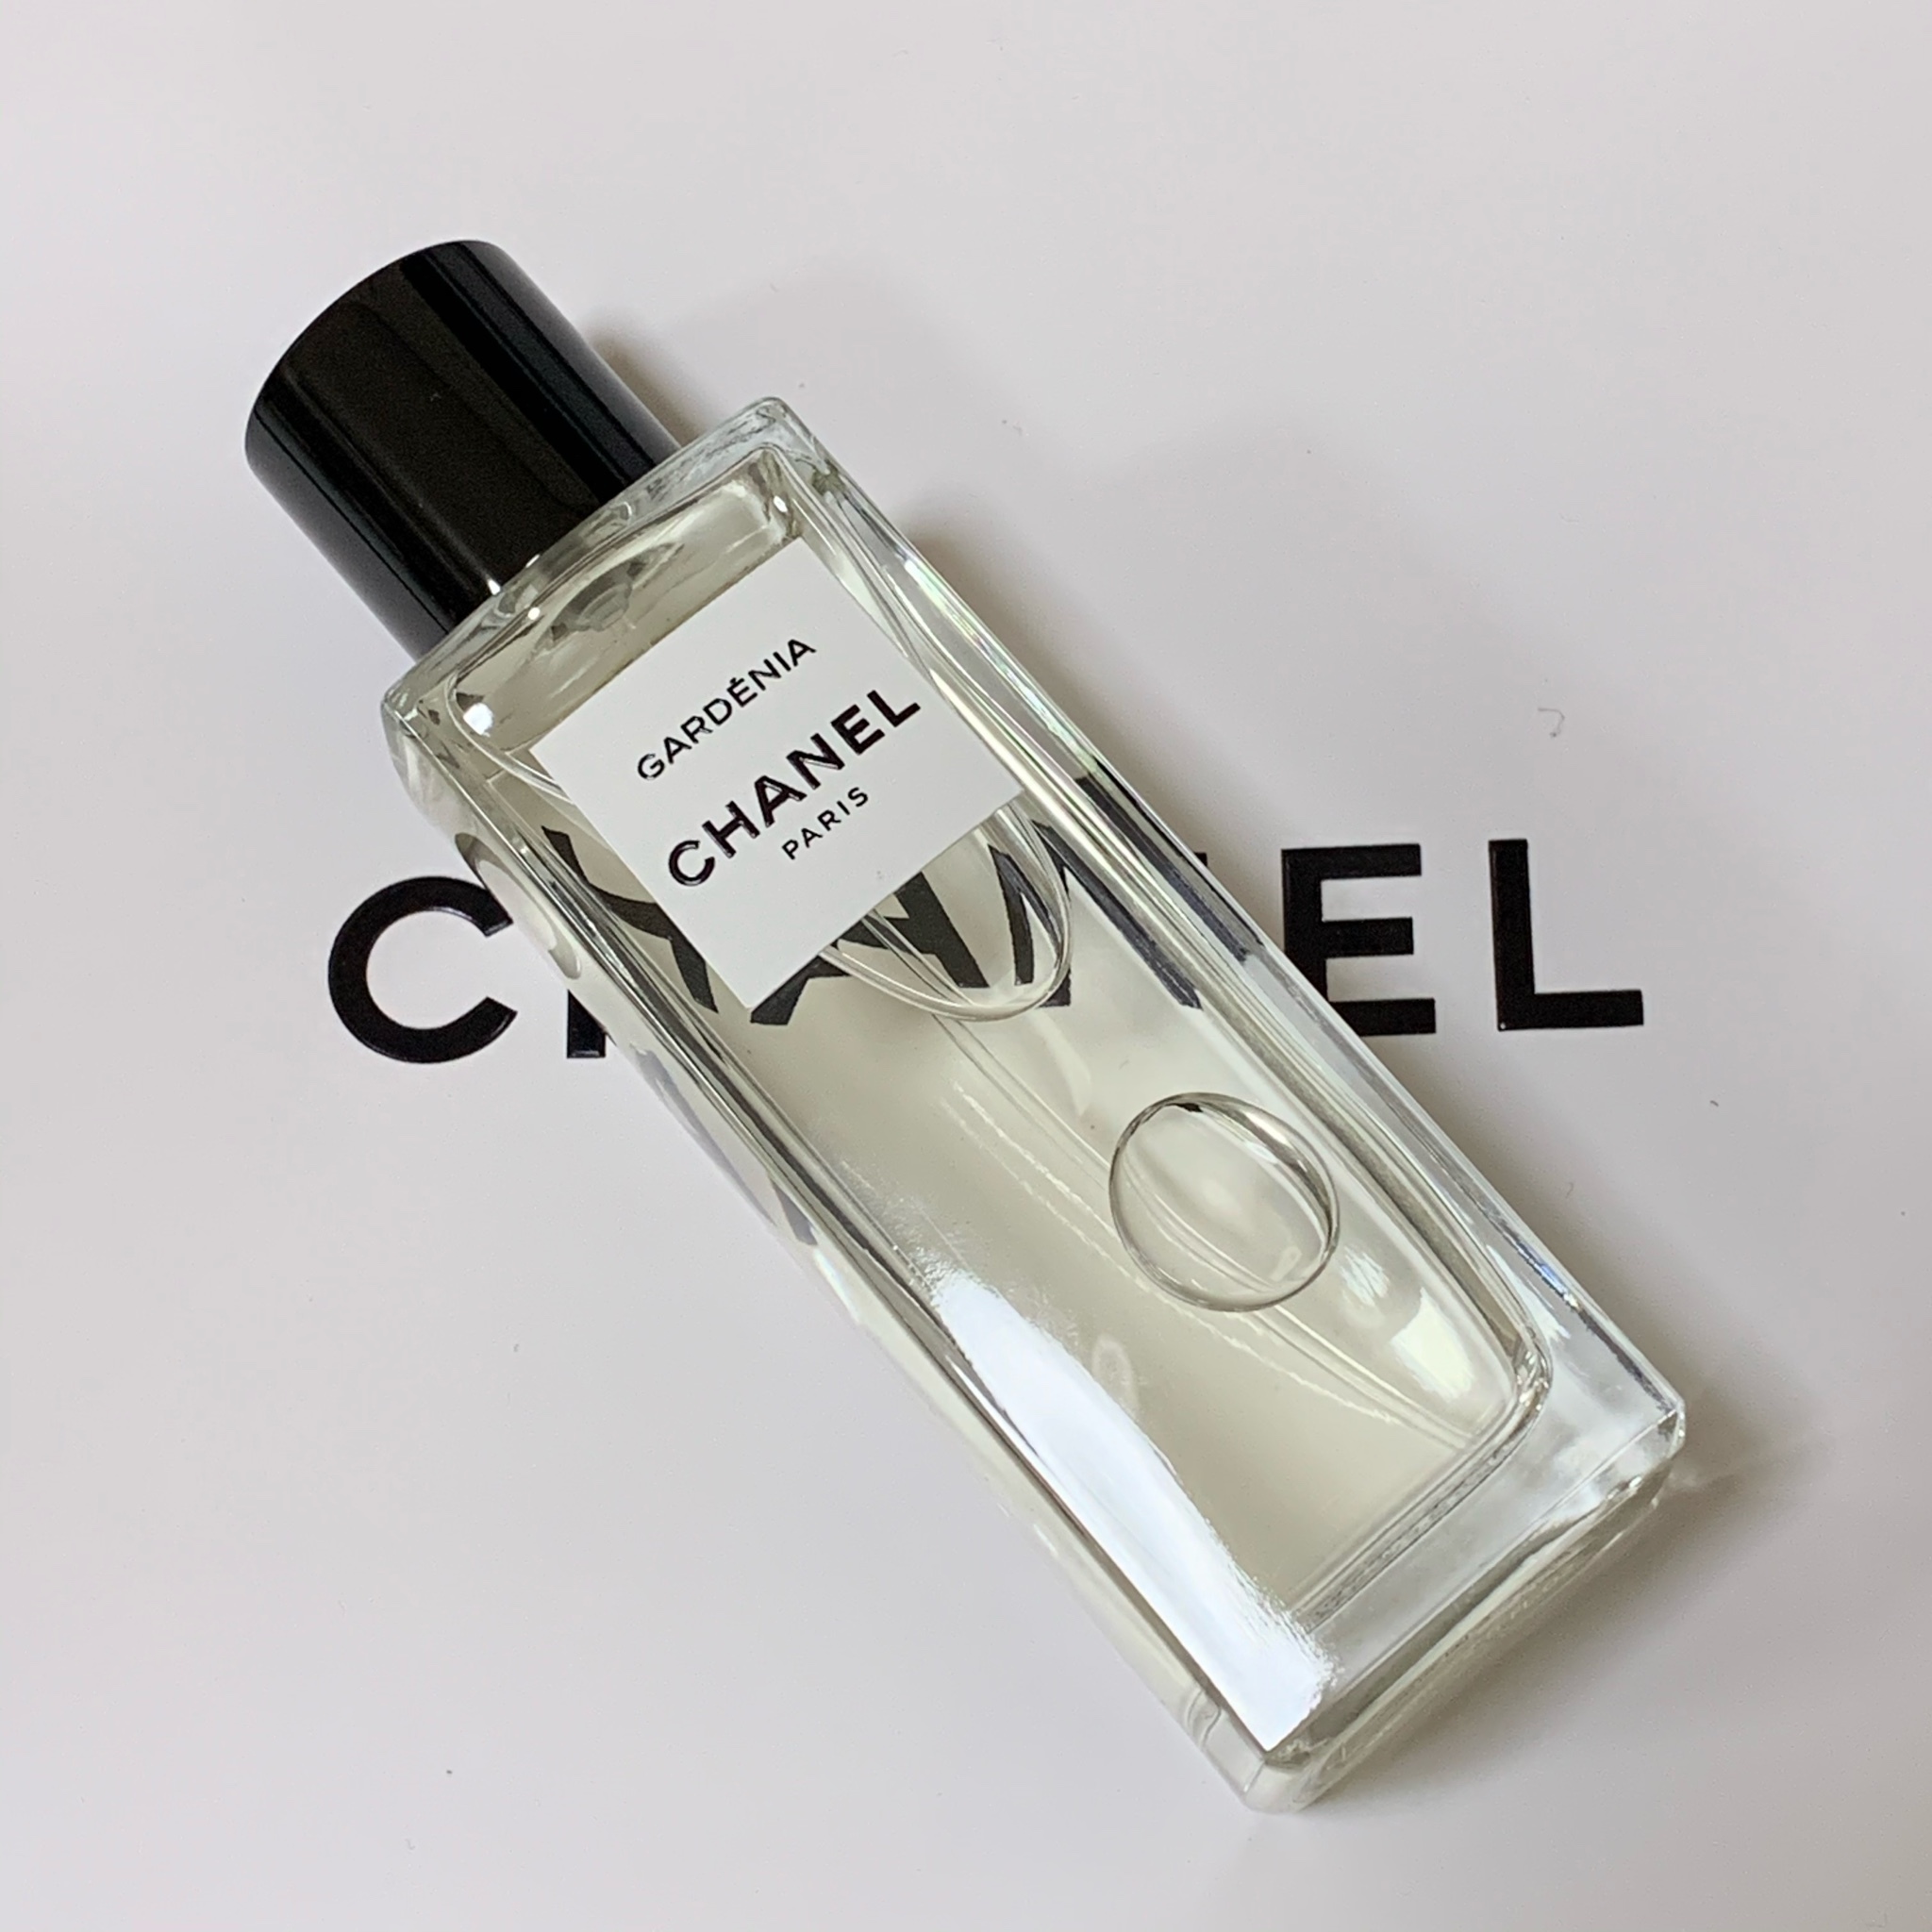 CHANELガーデニアオードゥパルファム - 香水(女性用)